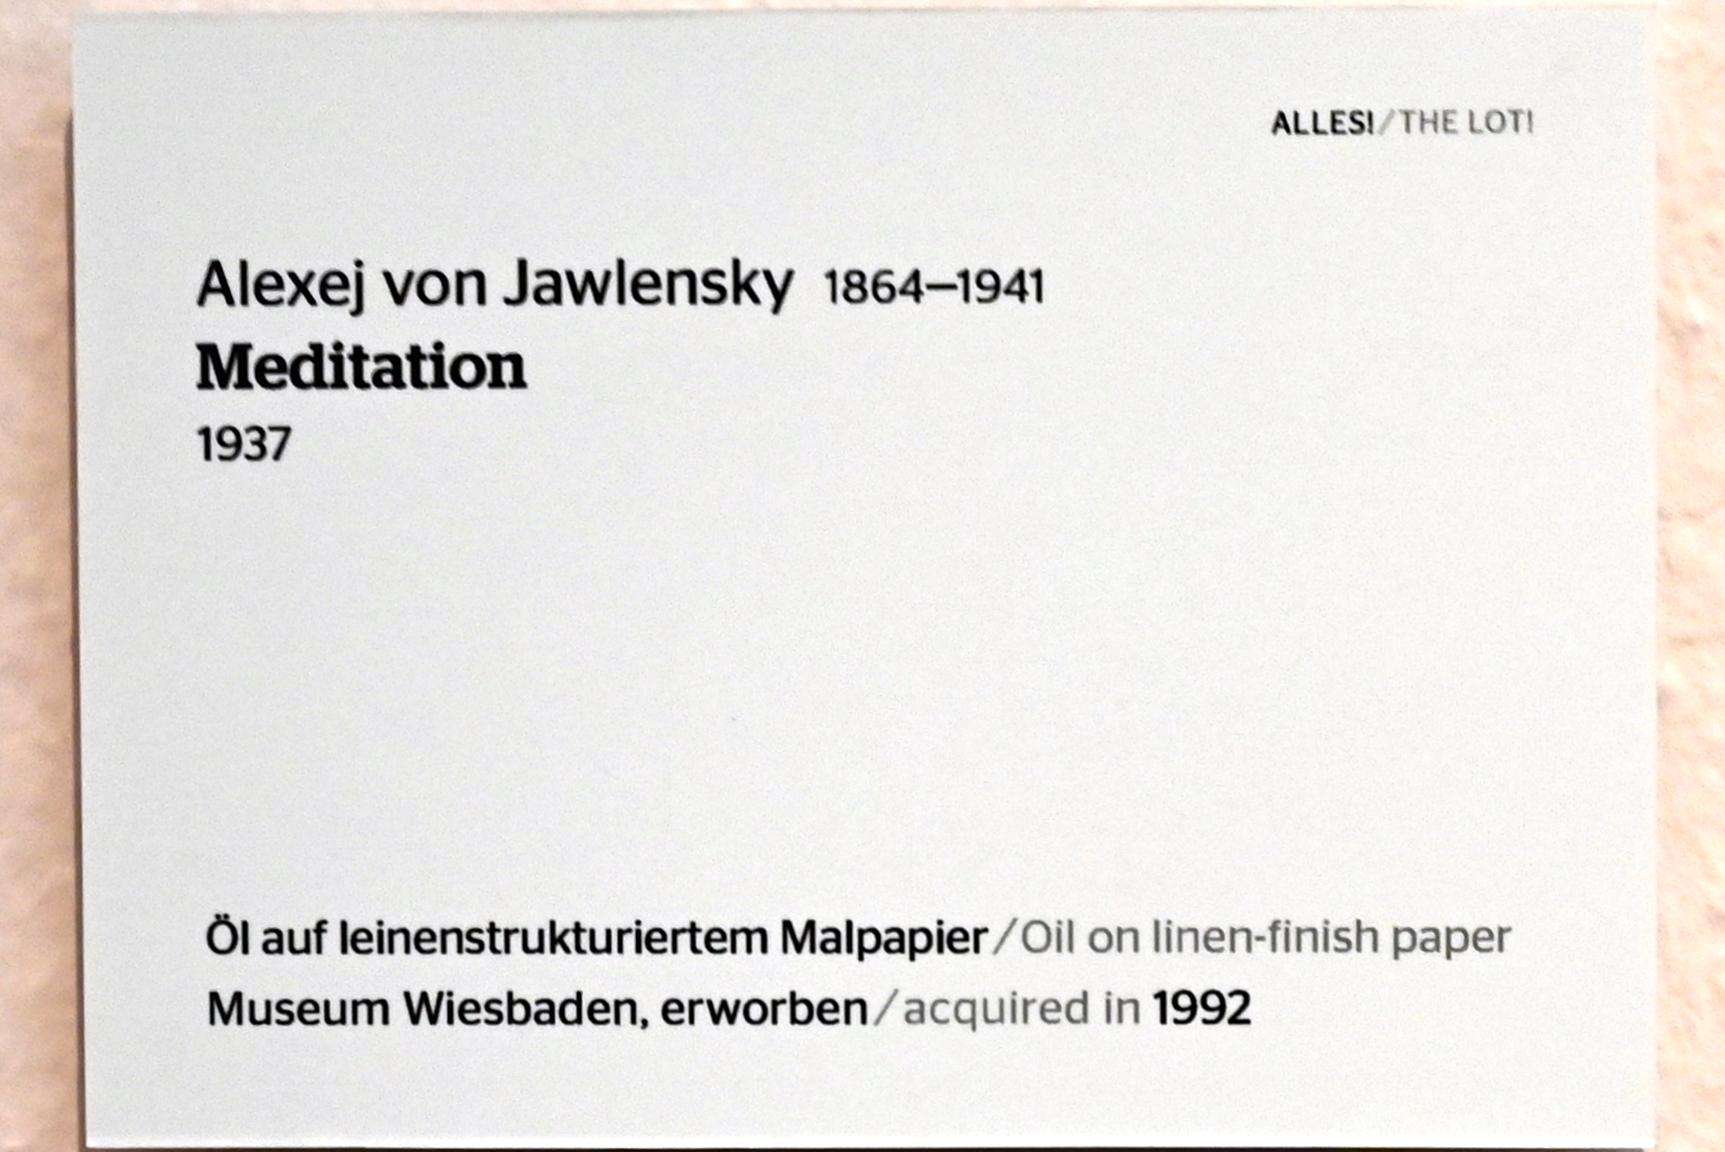 Alexej von Jawlensky (1893–1938), Meditation, Wiesbaden, Museum Wiesbaden, Ausstellung "Alles! 100 Jahre Jawlensky in Wiesbaden" vom 17.09.-26.06.2022, Saal 13, 1937, Bild 2/2